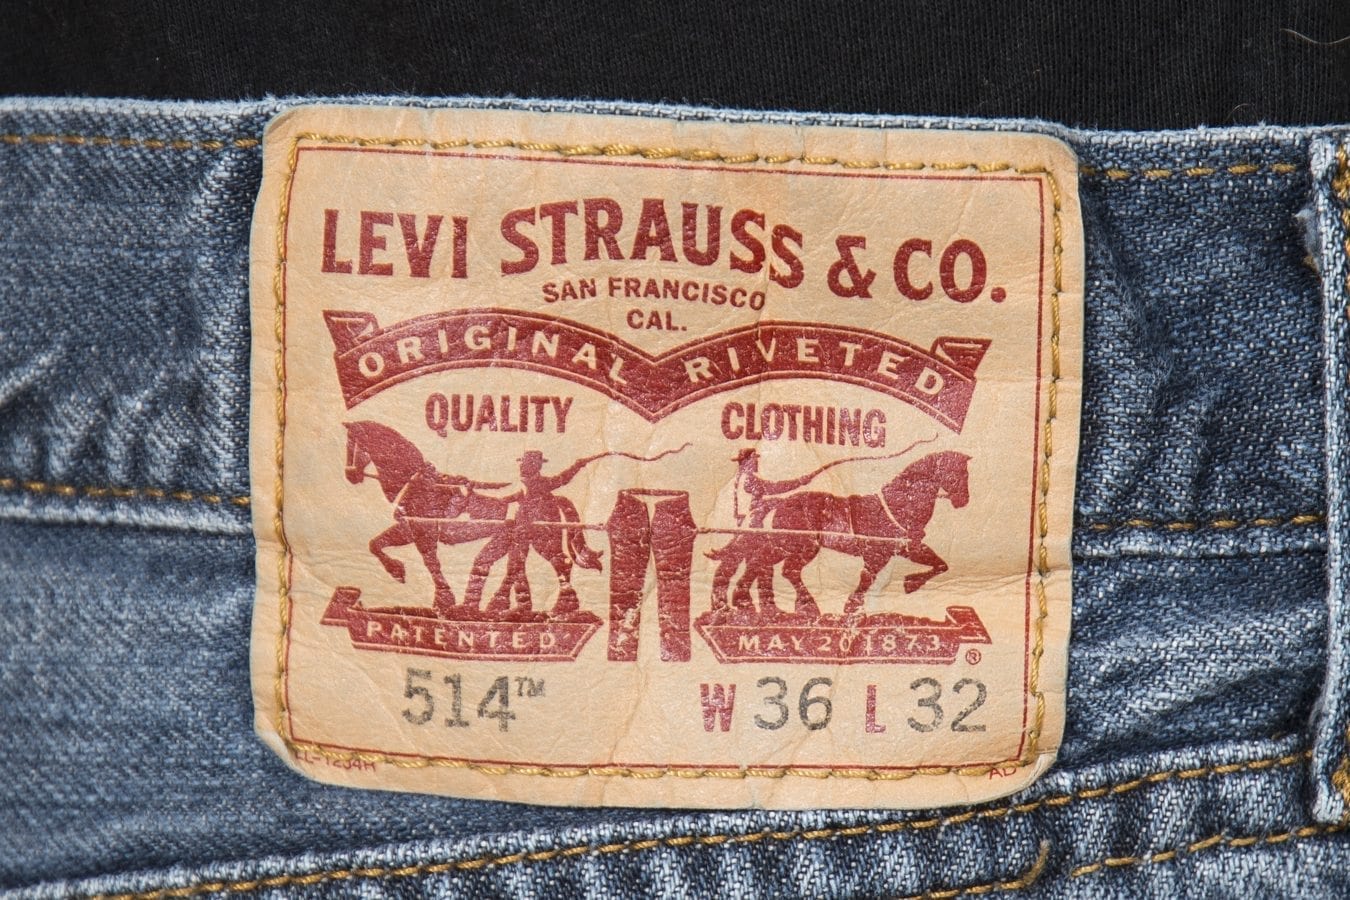 levis jeans deals